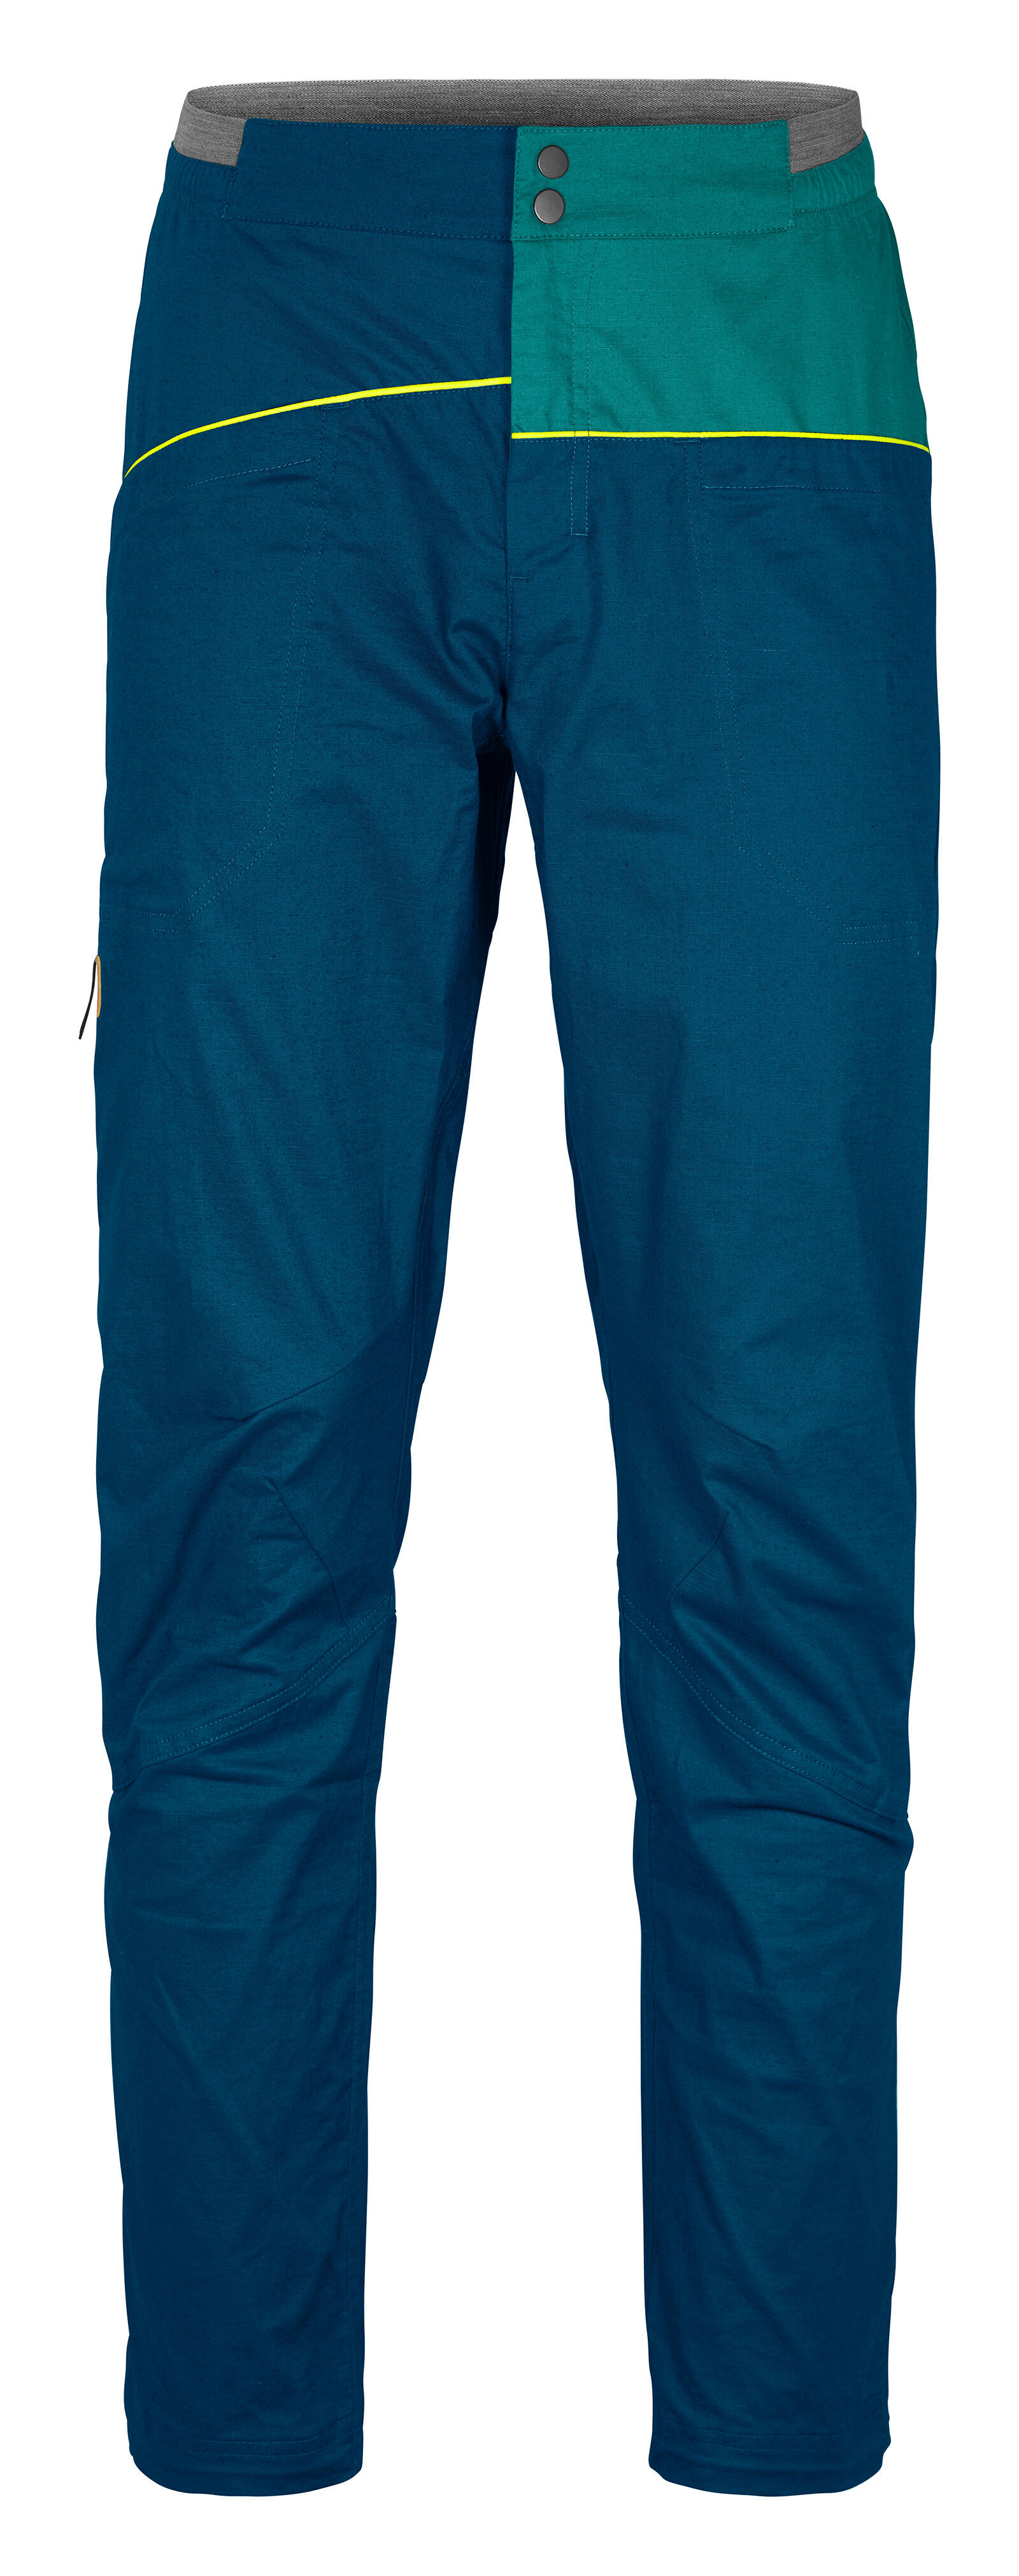 Ortovox Valbon Pants - Climbing trousers - Men's